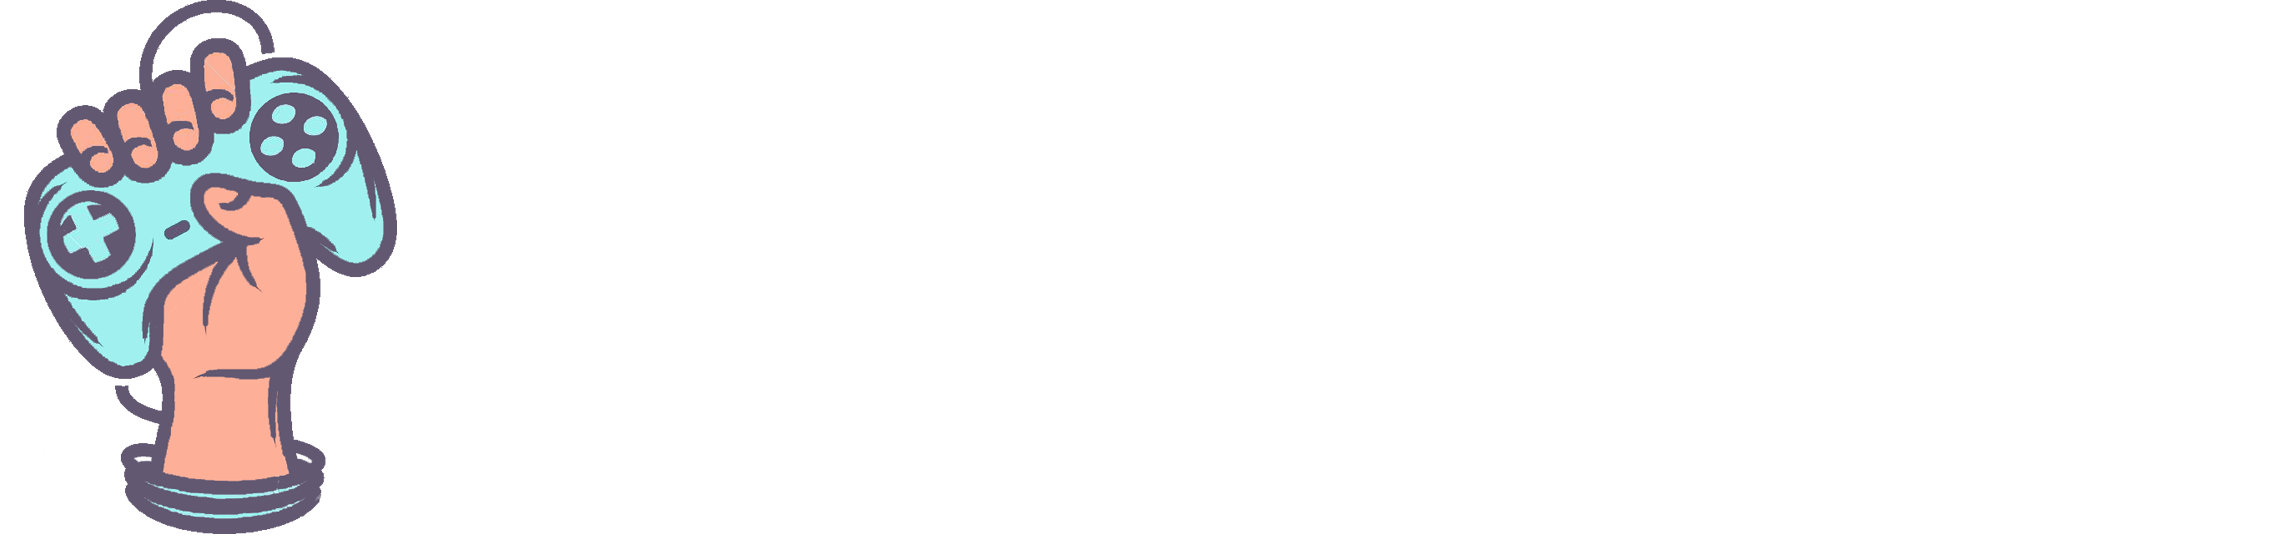 ShamanGames